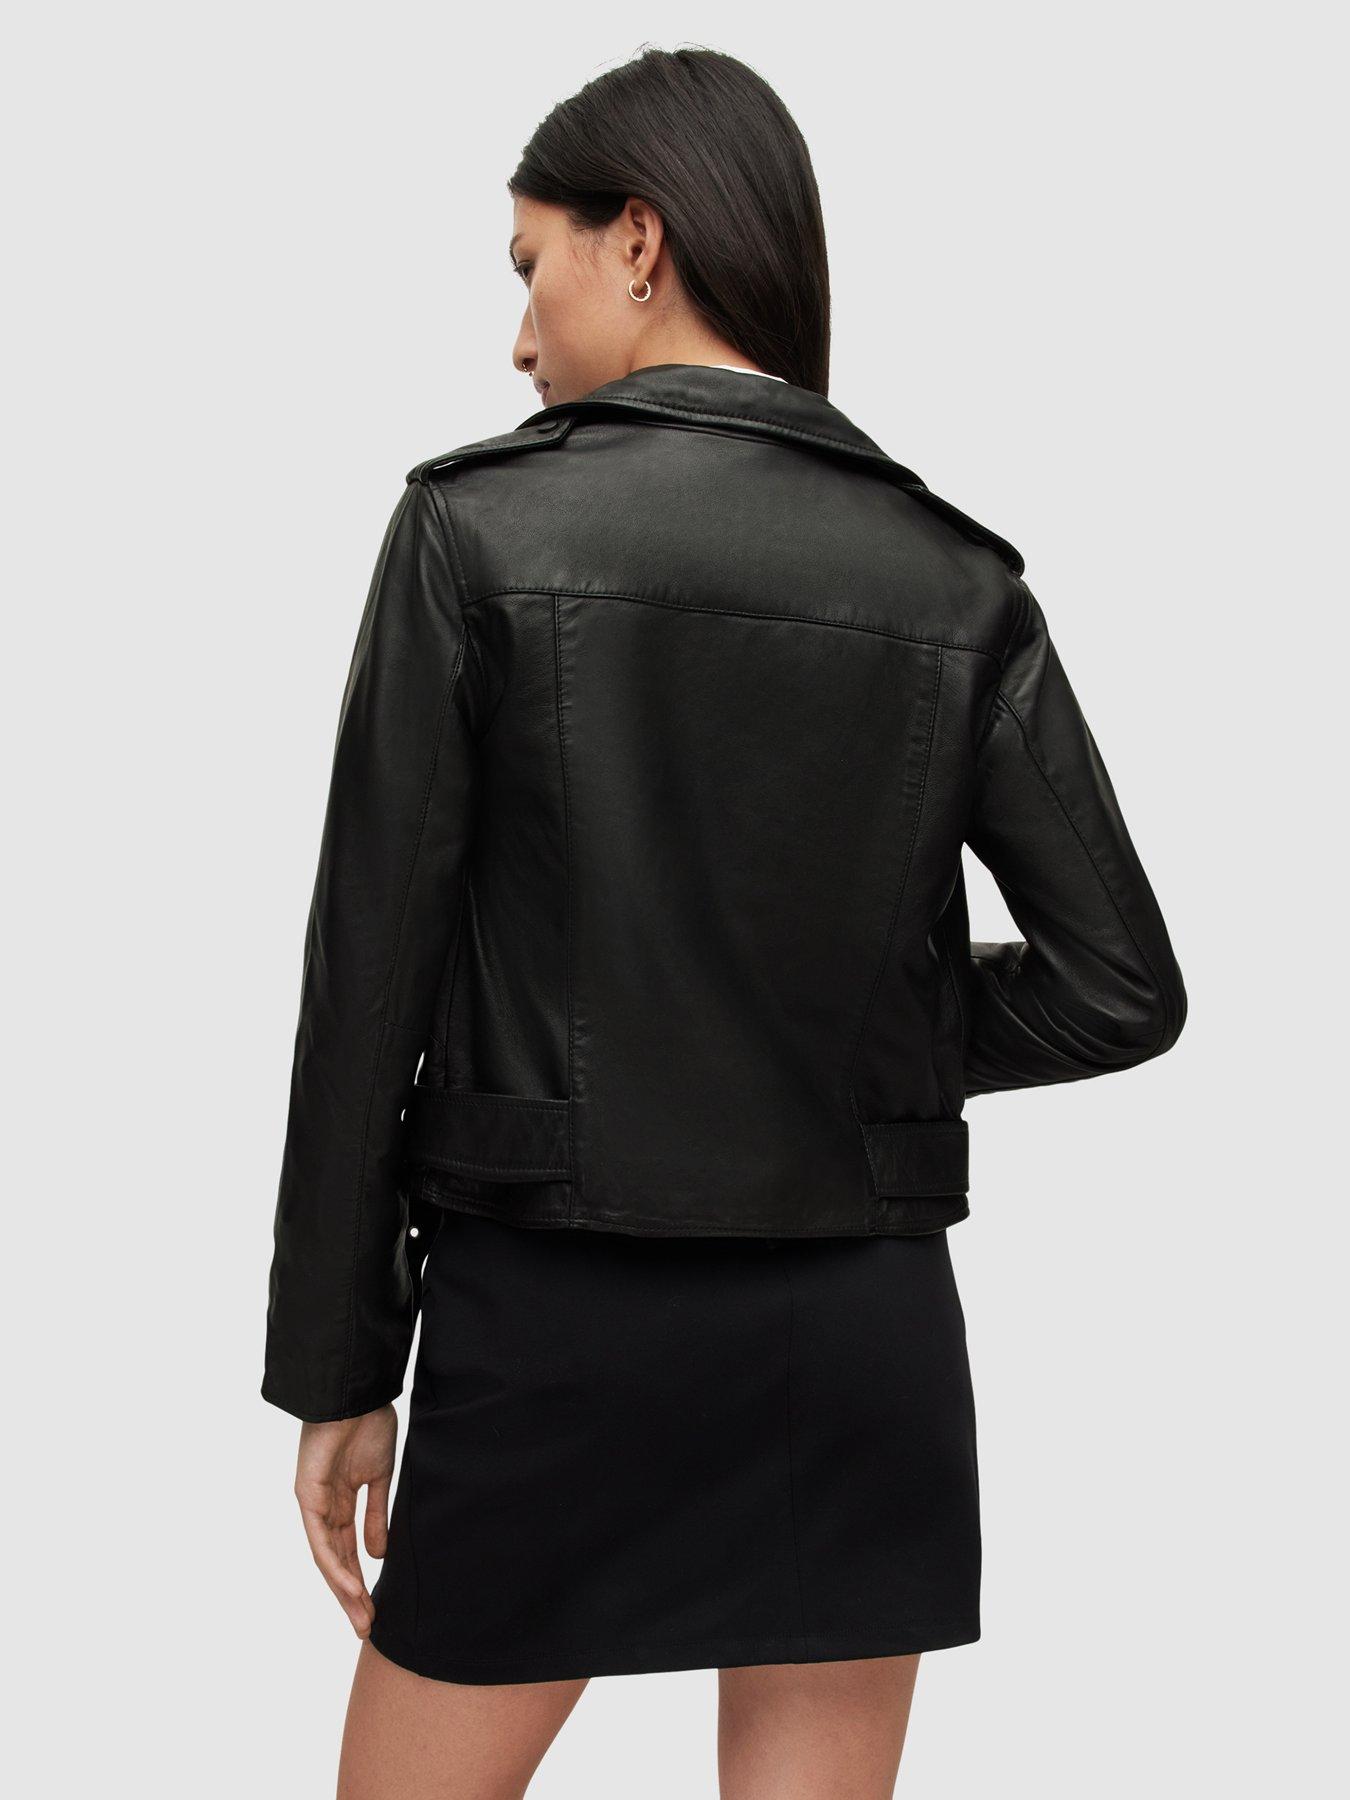 women's short fitted black leather jacket HI TEK - Hi Tek Webstore